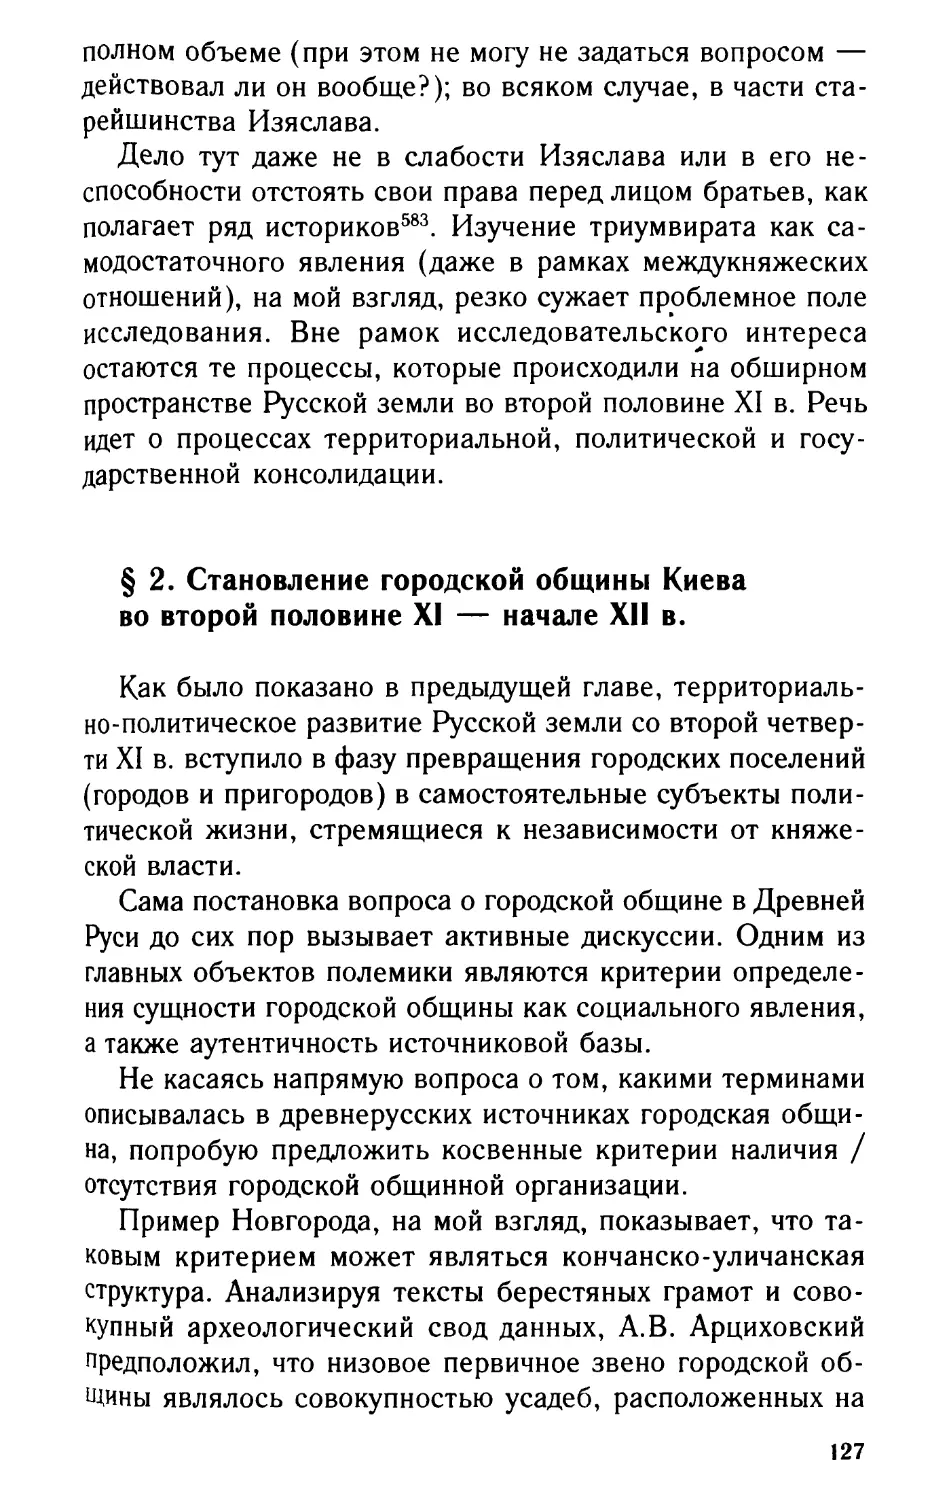 2. Становление городской общины Киева во второй половине XI - начале XII вв.